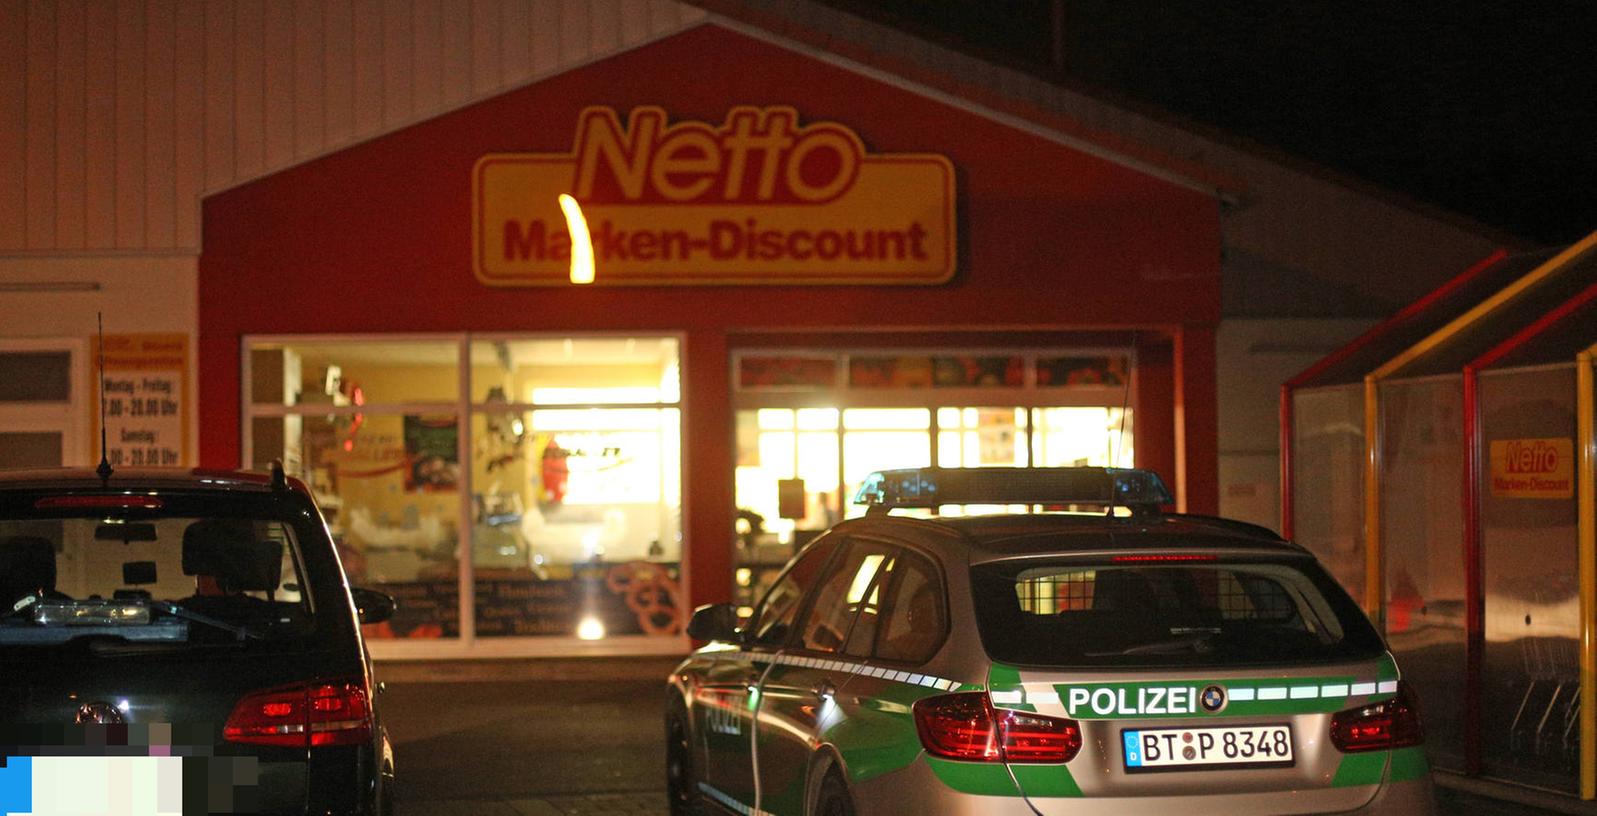 Dieser Lebensmittel-Discounter in Buttenheim wurde am 27. November überfallen. Drei Täter konnten nun ermittelt werden.